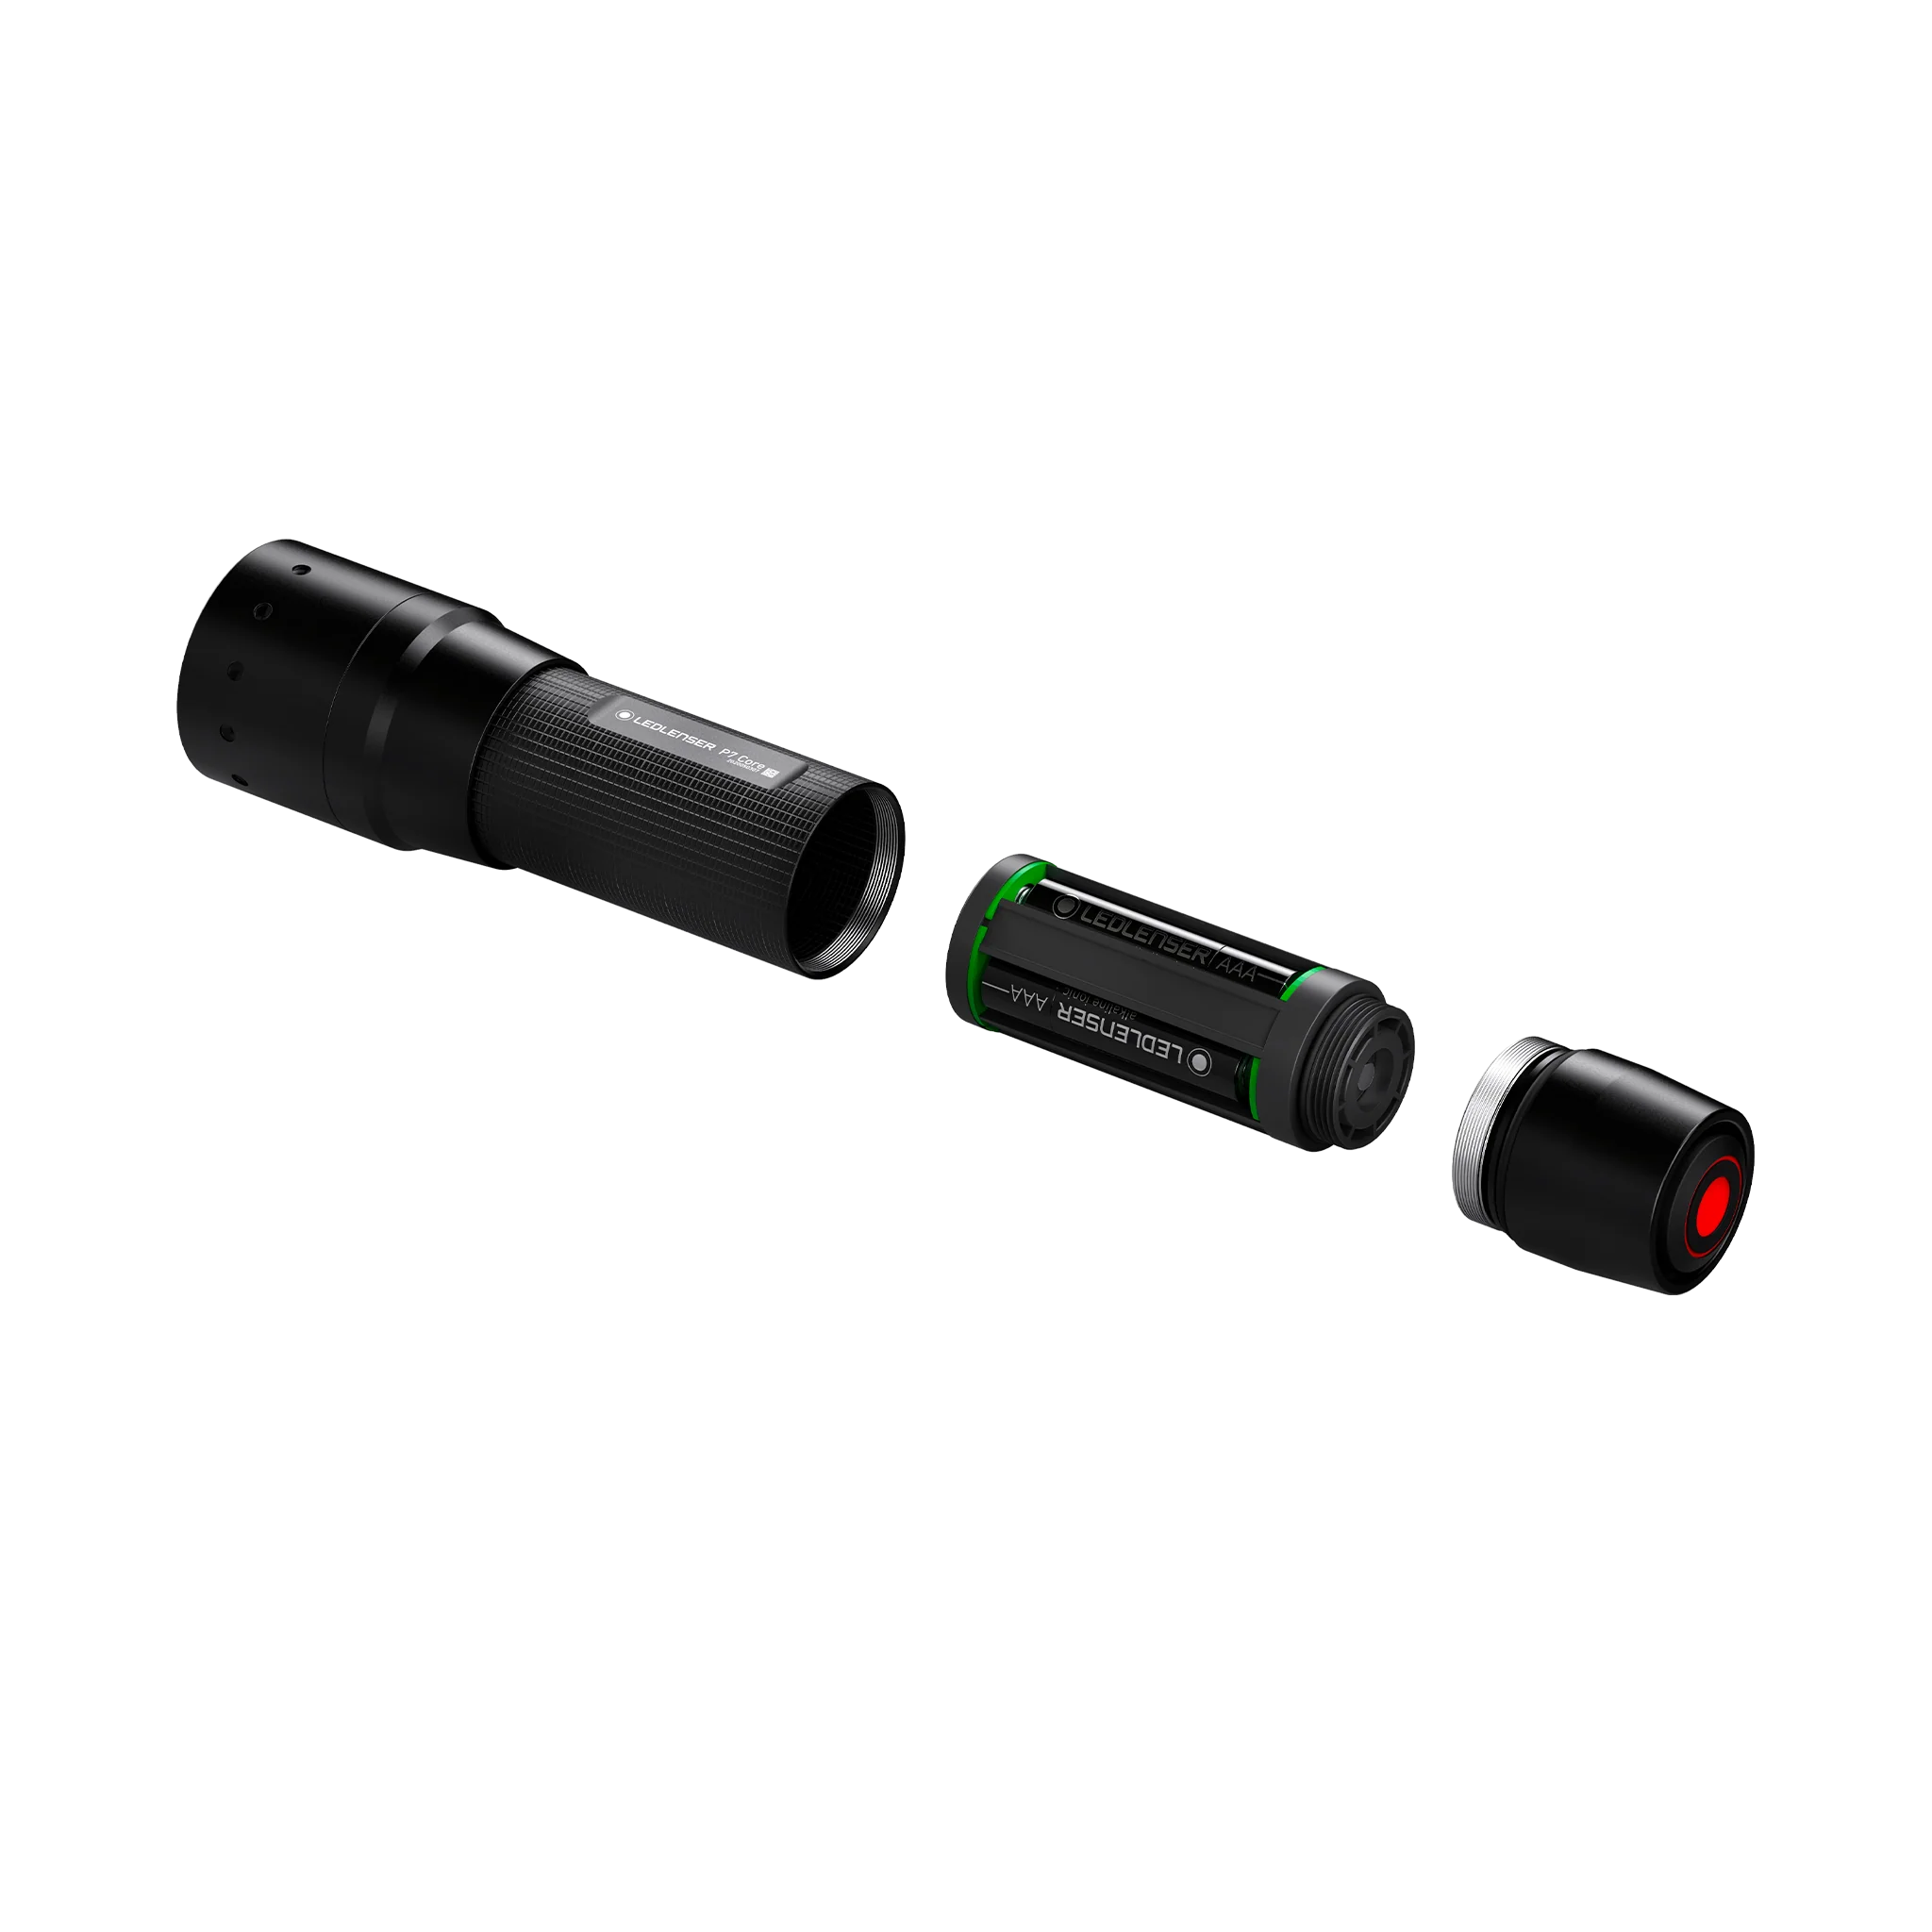 Ledlenser LED Flashlight Torch P7 Core